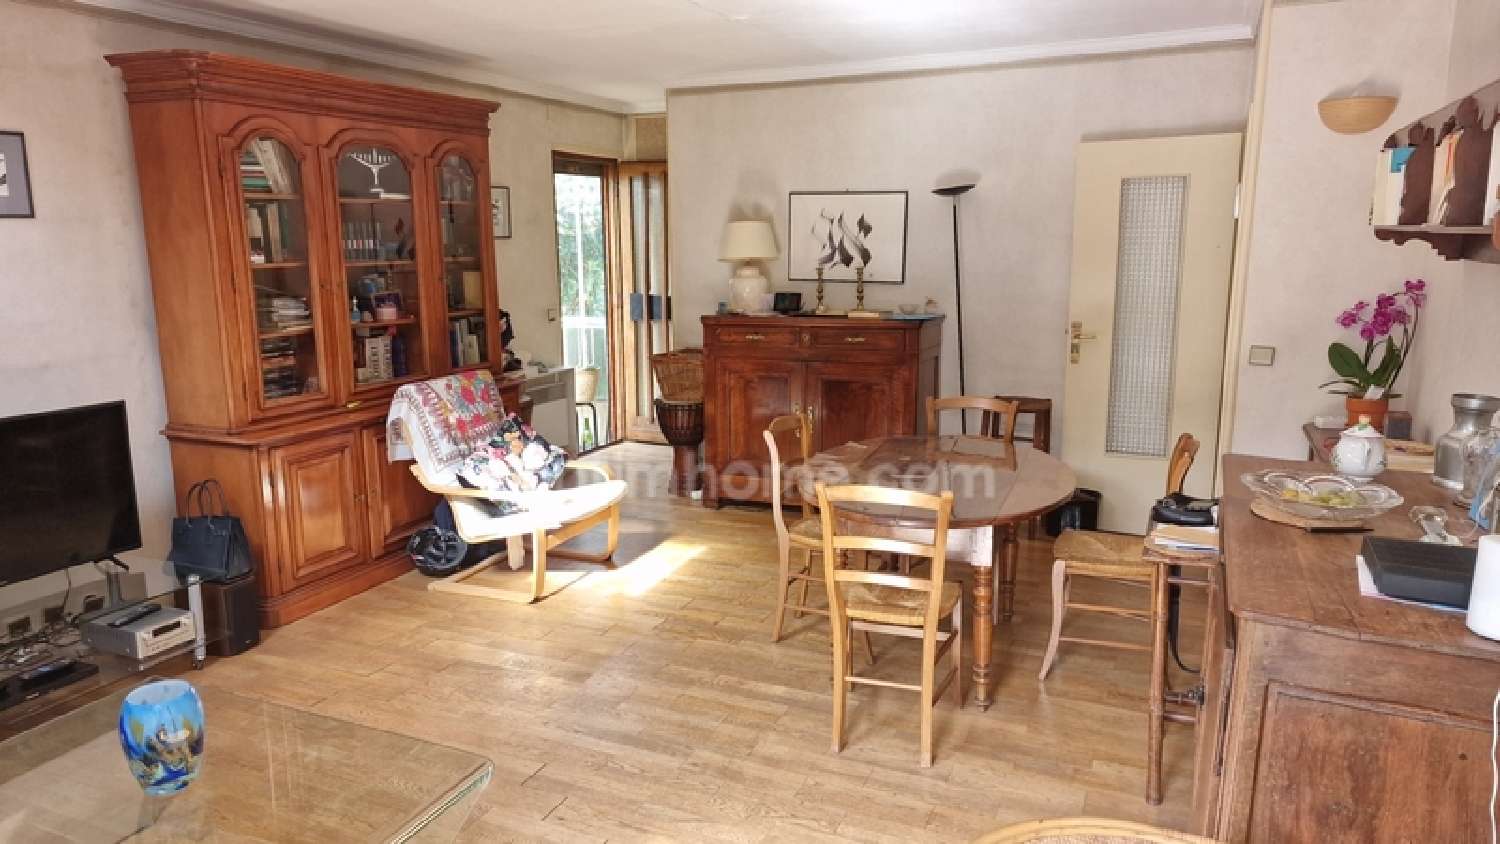  à vendre maison Pierrefitte-sur-Seine Seine-Saint-Denis 3